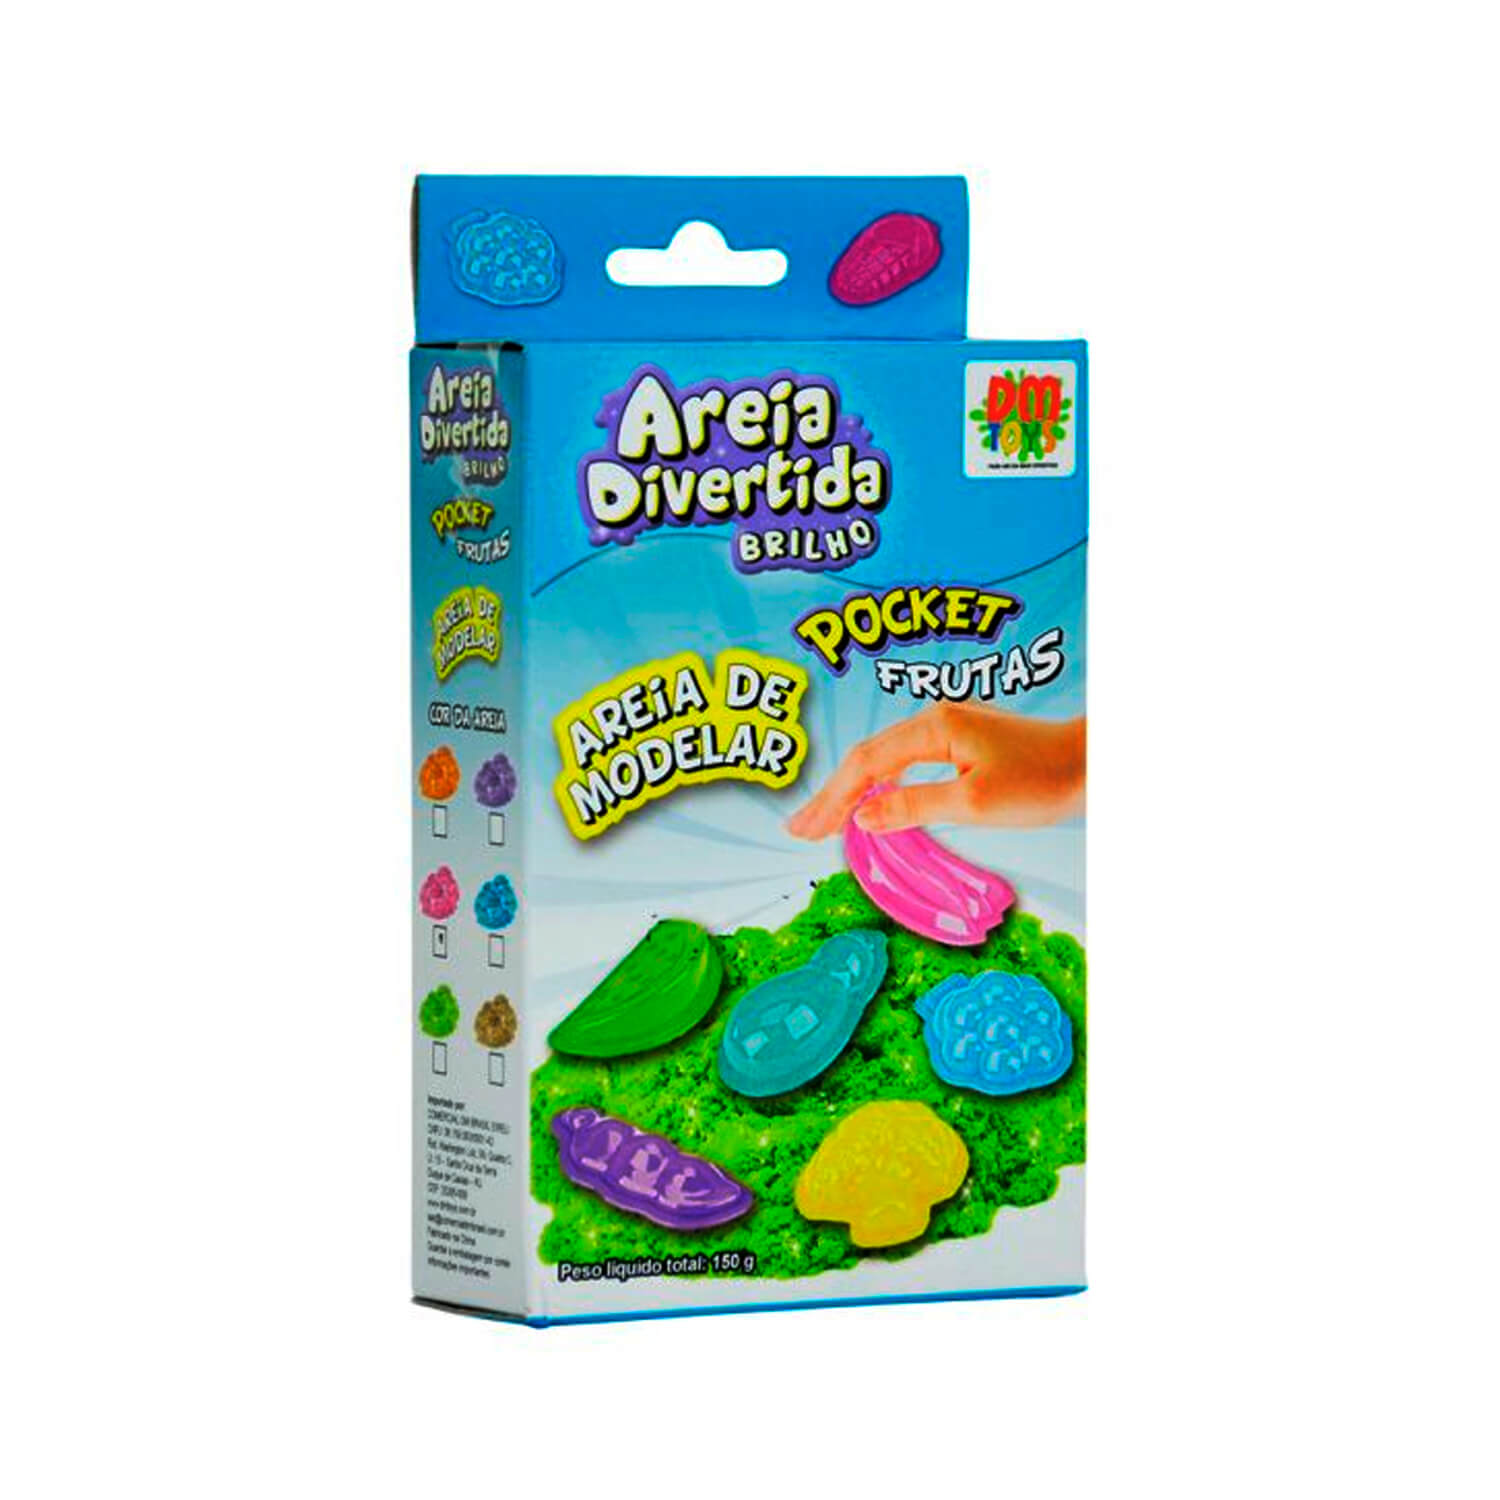 Lojas-TEM-Areia-Divertida-Pocket-Frutas-DM-Toys